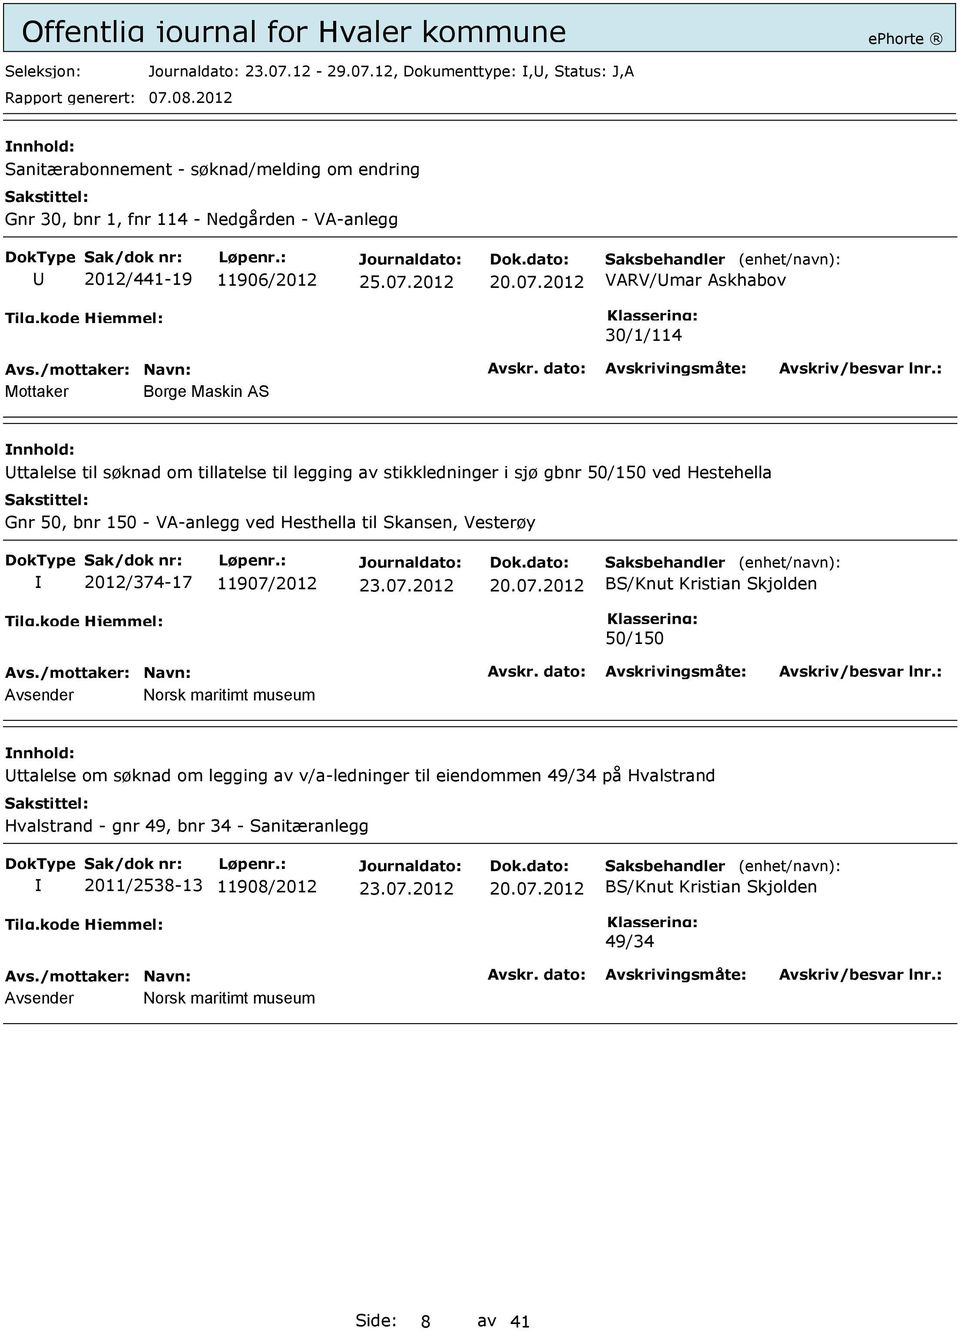 12, Dokumenttype:,, Status: J,A Sanitærabonnement - søknad/melding om endring Gnr 30, bnr 1, fnr 114 - Nedgården - VA-anlegg 2012/441-19 11906/2012 20.07.